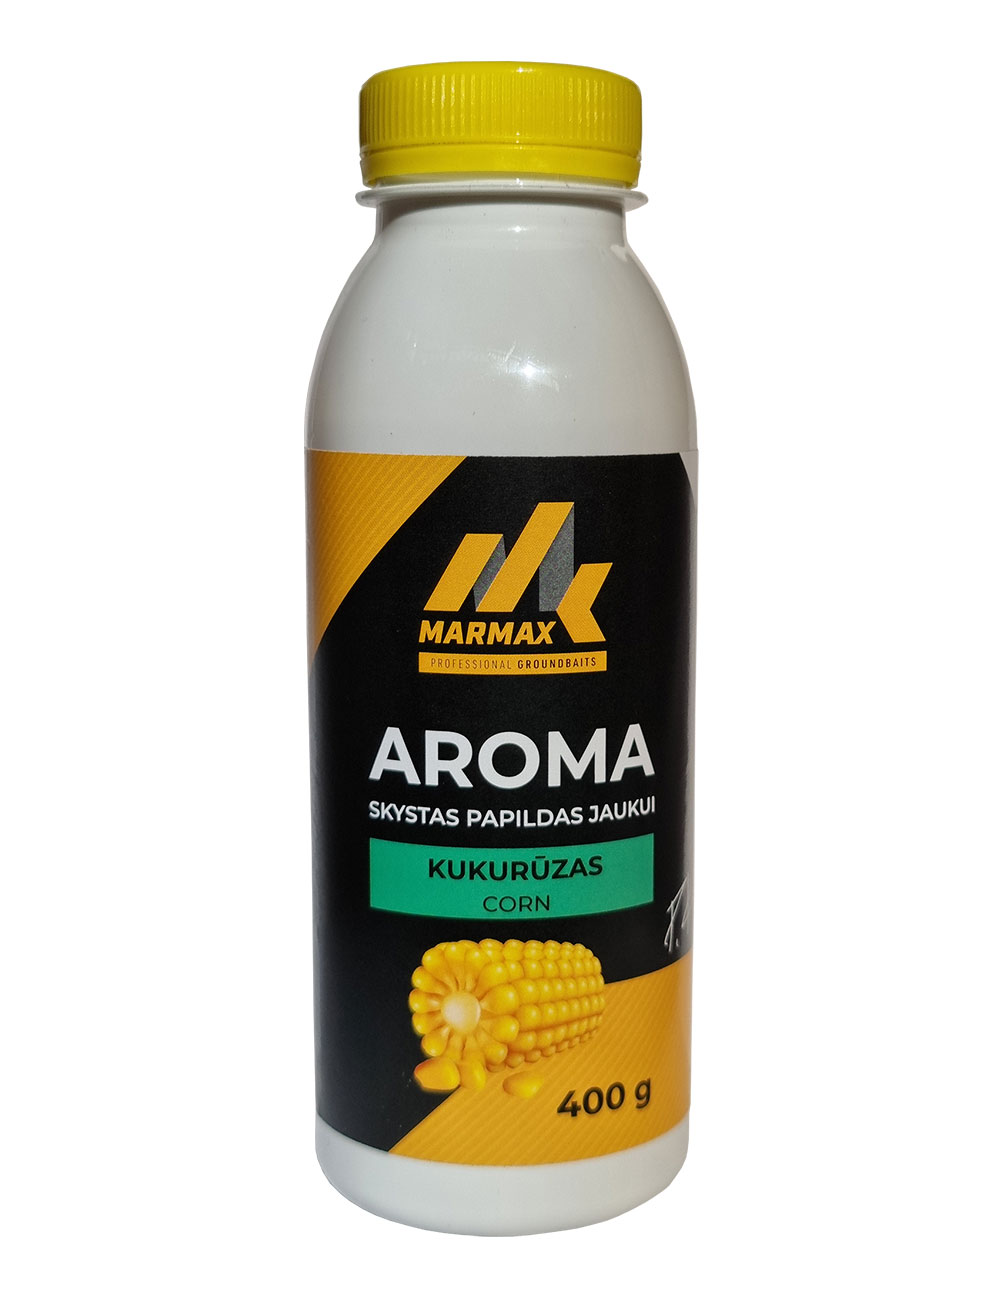 Aroma - Kukurūzas (400g)